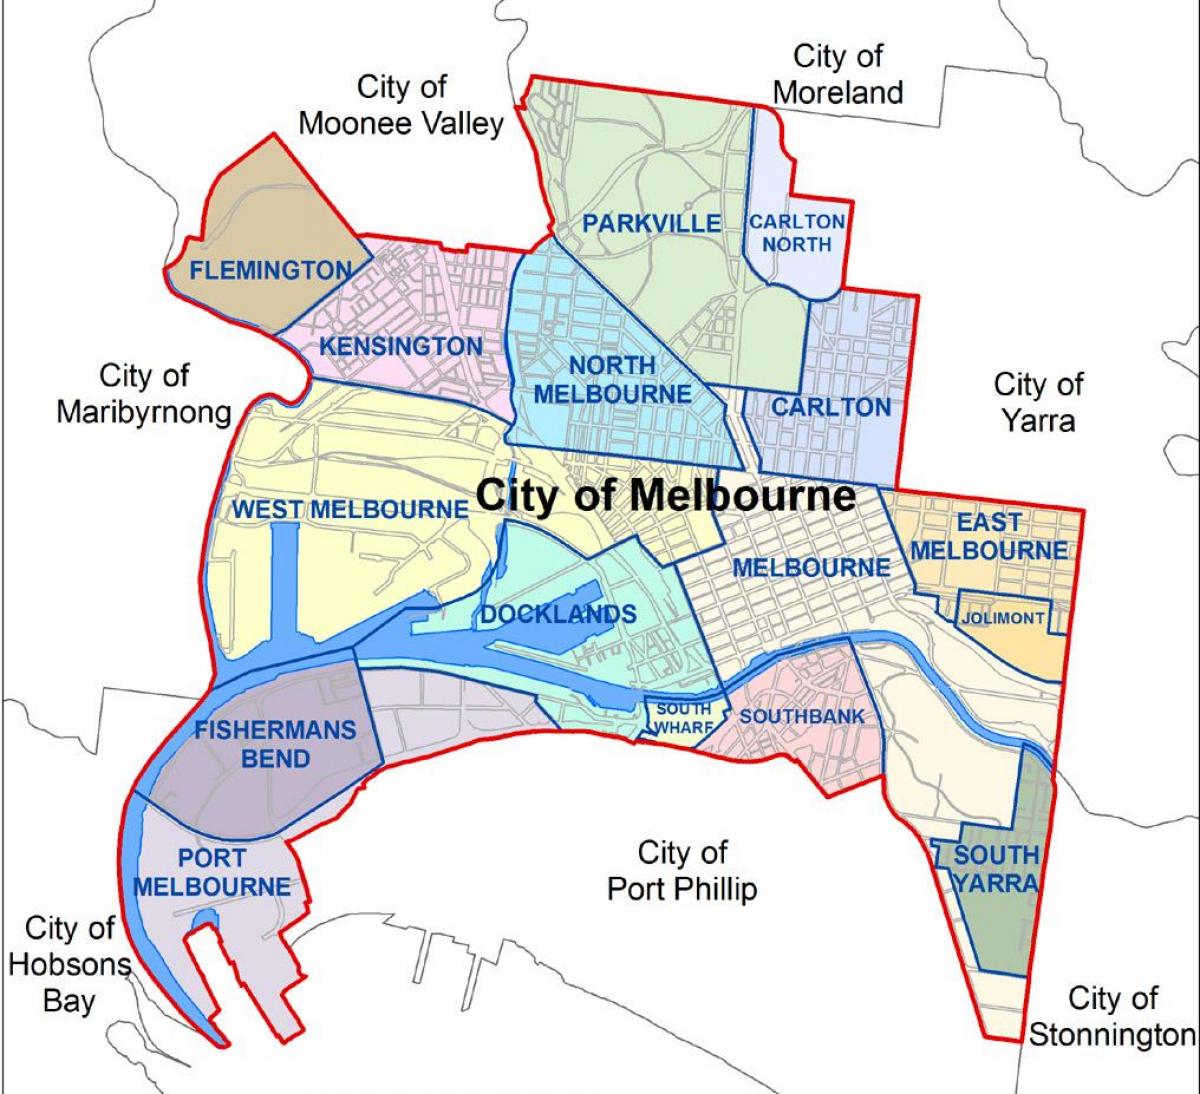 karti Melbournea i okolice